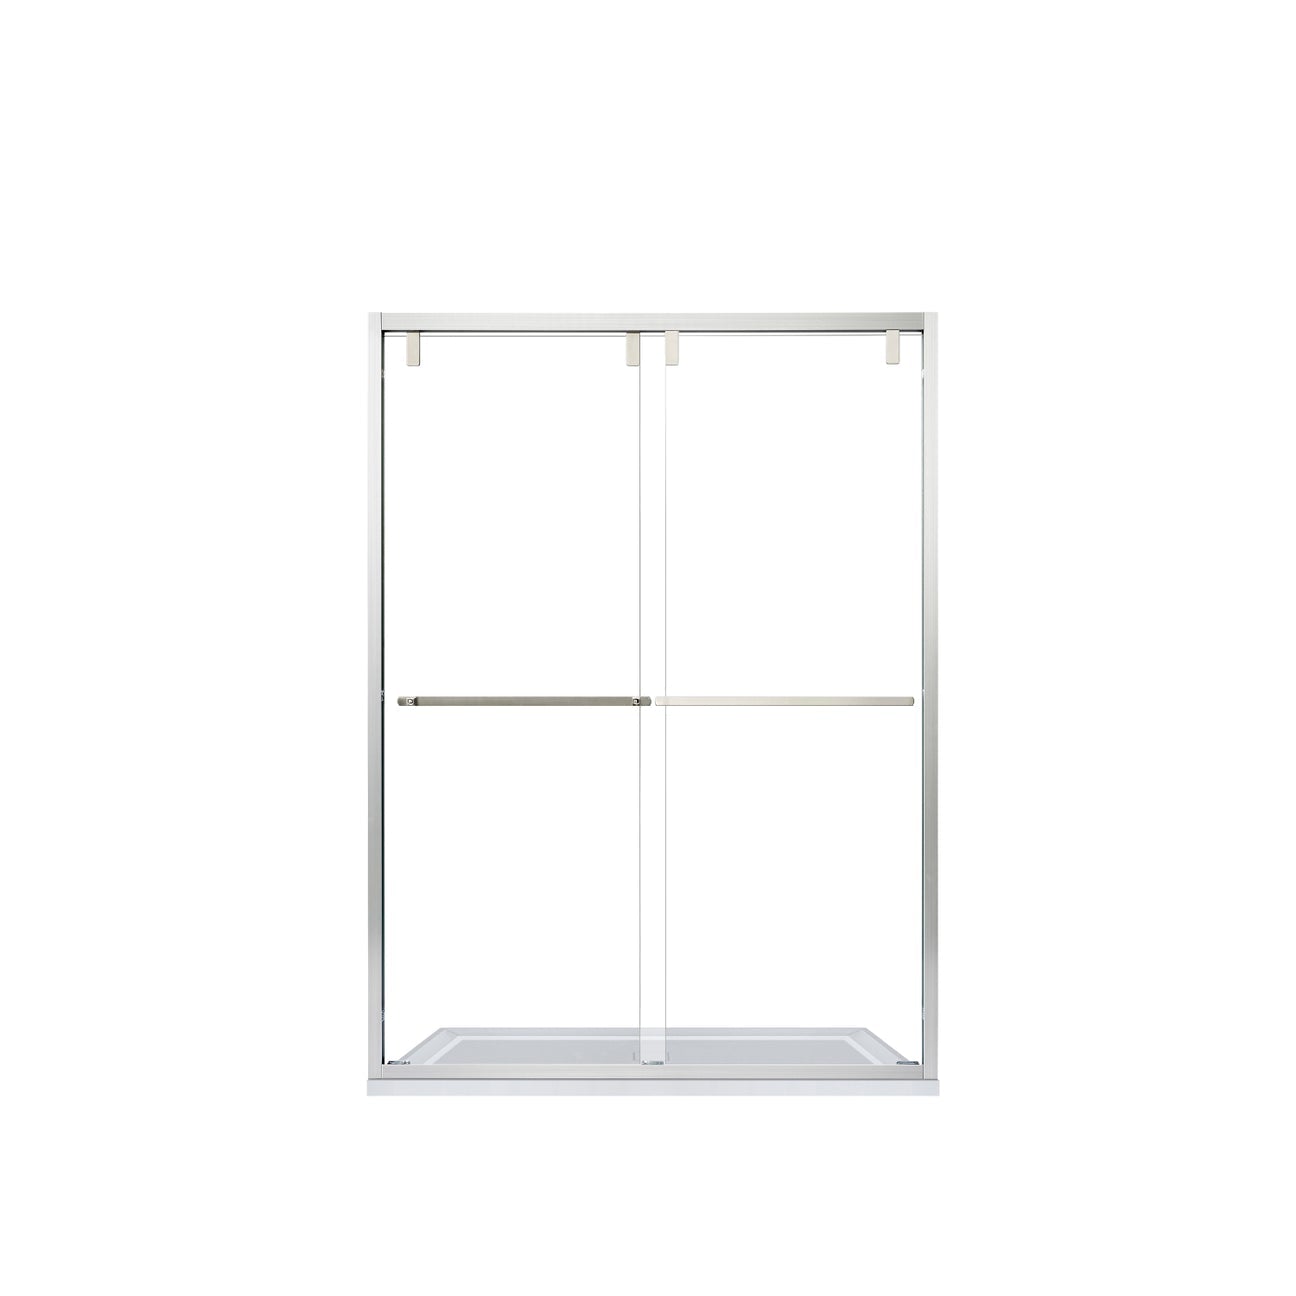 Vinnova Brescia 48" W x 76" H Double Sliding Framed Shower Door in Brushed Nickel - 307048-BP-BN - New Star Living